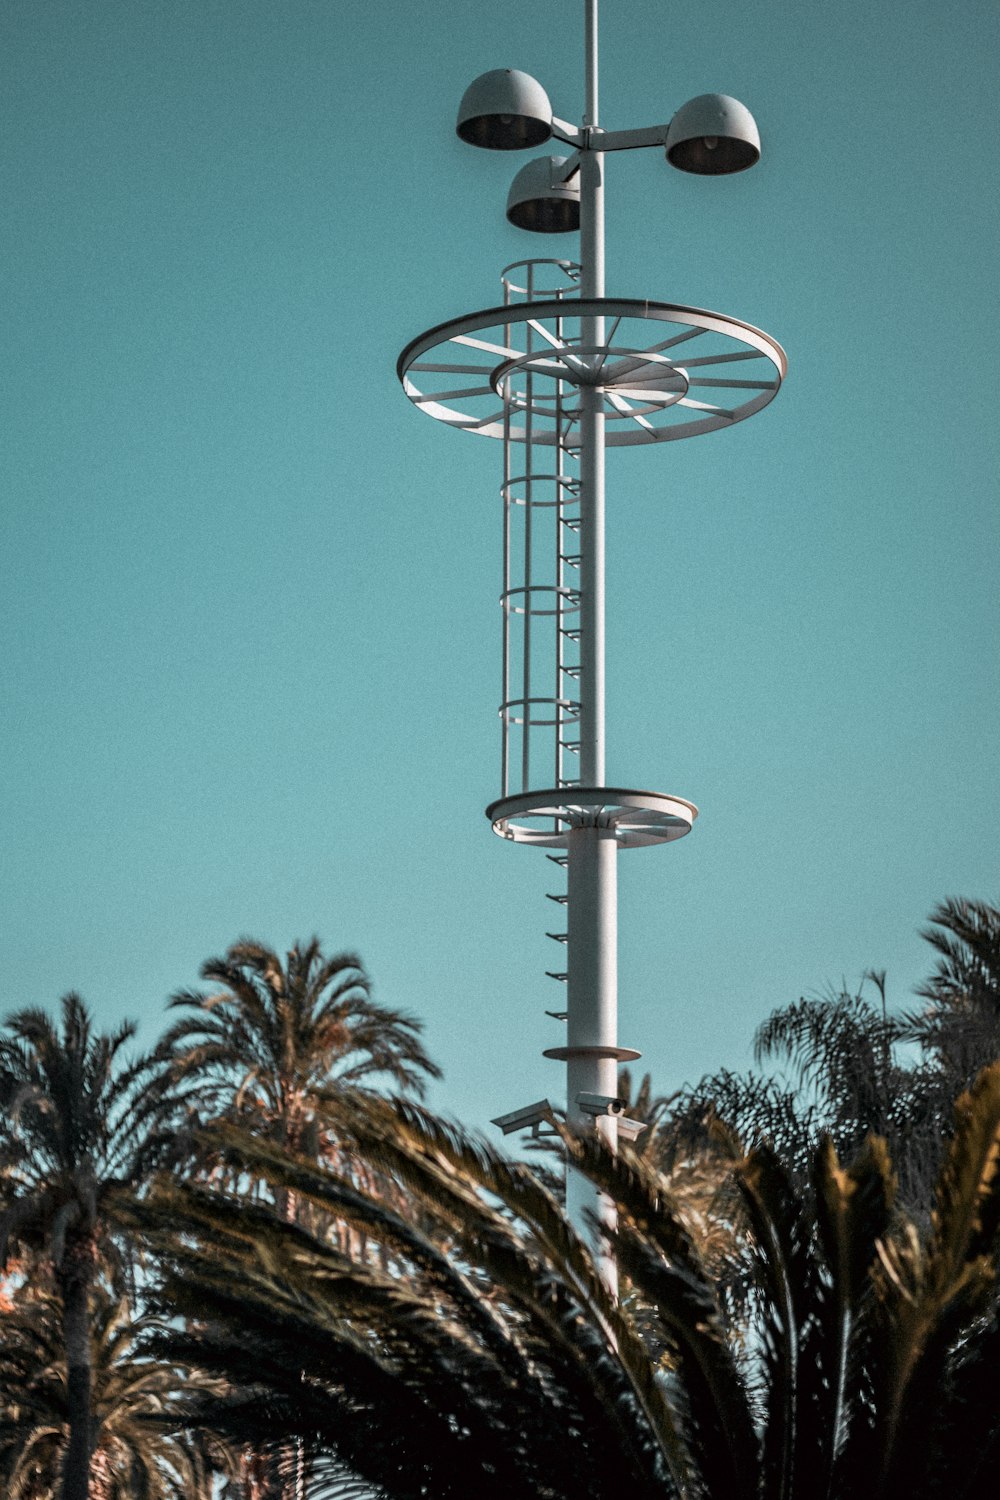 torre bianca del metallo accanto alle palme